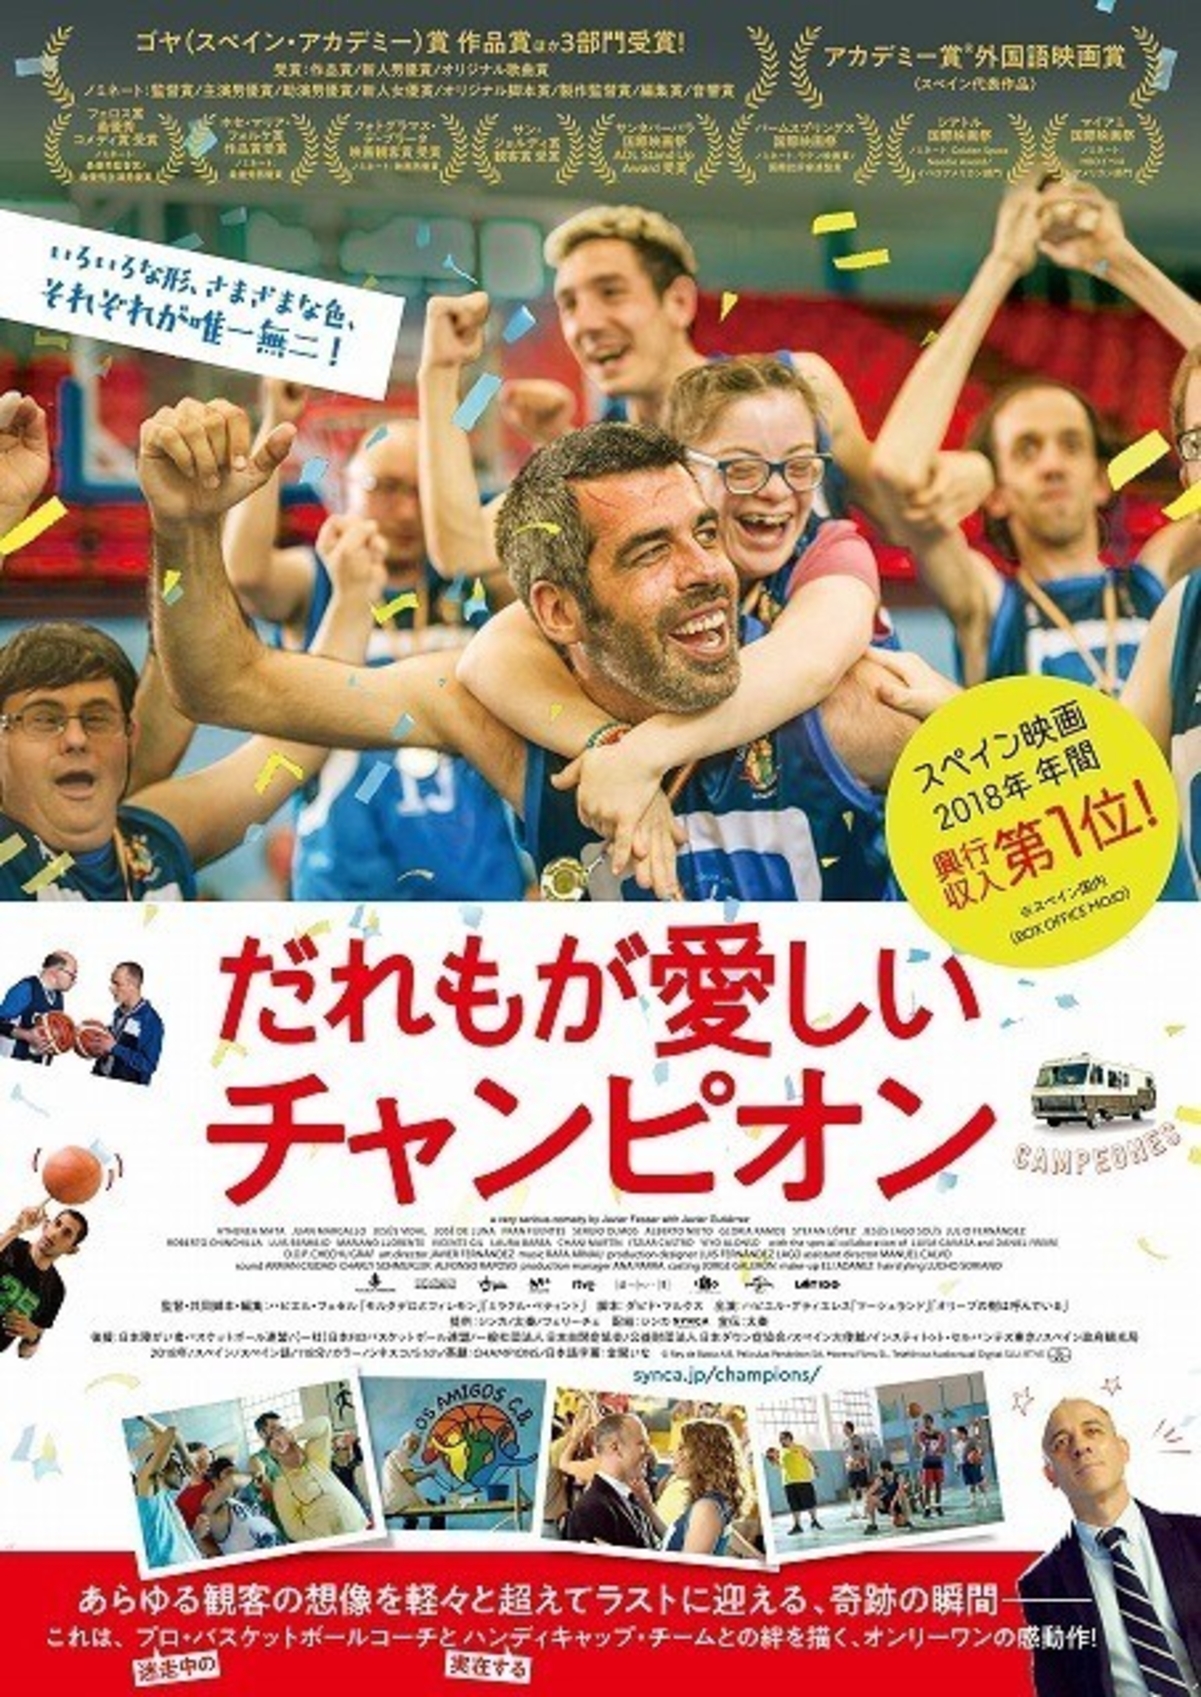 スペインで興行収入1位の大ヒット ハンディキャップを負う人々のバスケチームを描く感動作 映画ニュース 映画 Com